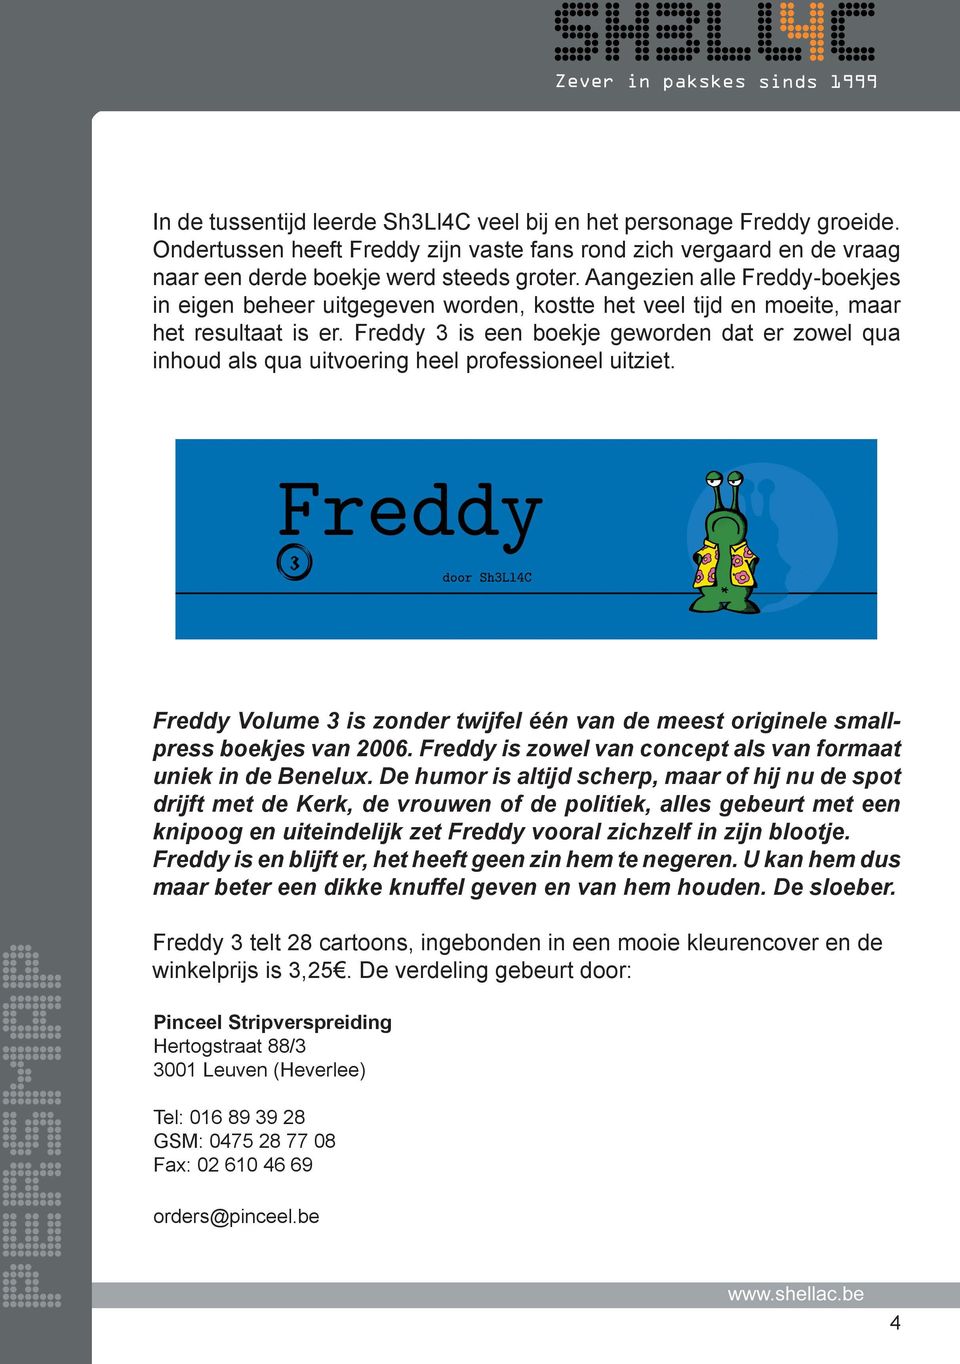 Freddy 3 is een boekje geworden dat er zowel qua inhoud als qua uitvoering heel professioneel uitziet. Freddy Volume 3 is zonder twijfel één van de meest originele smallpress boekjes van 2006.